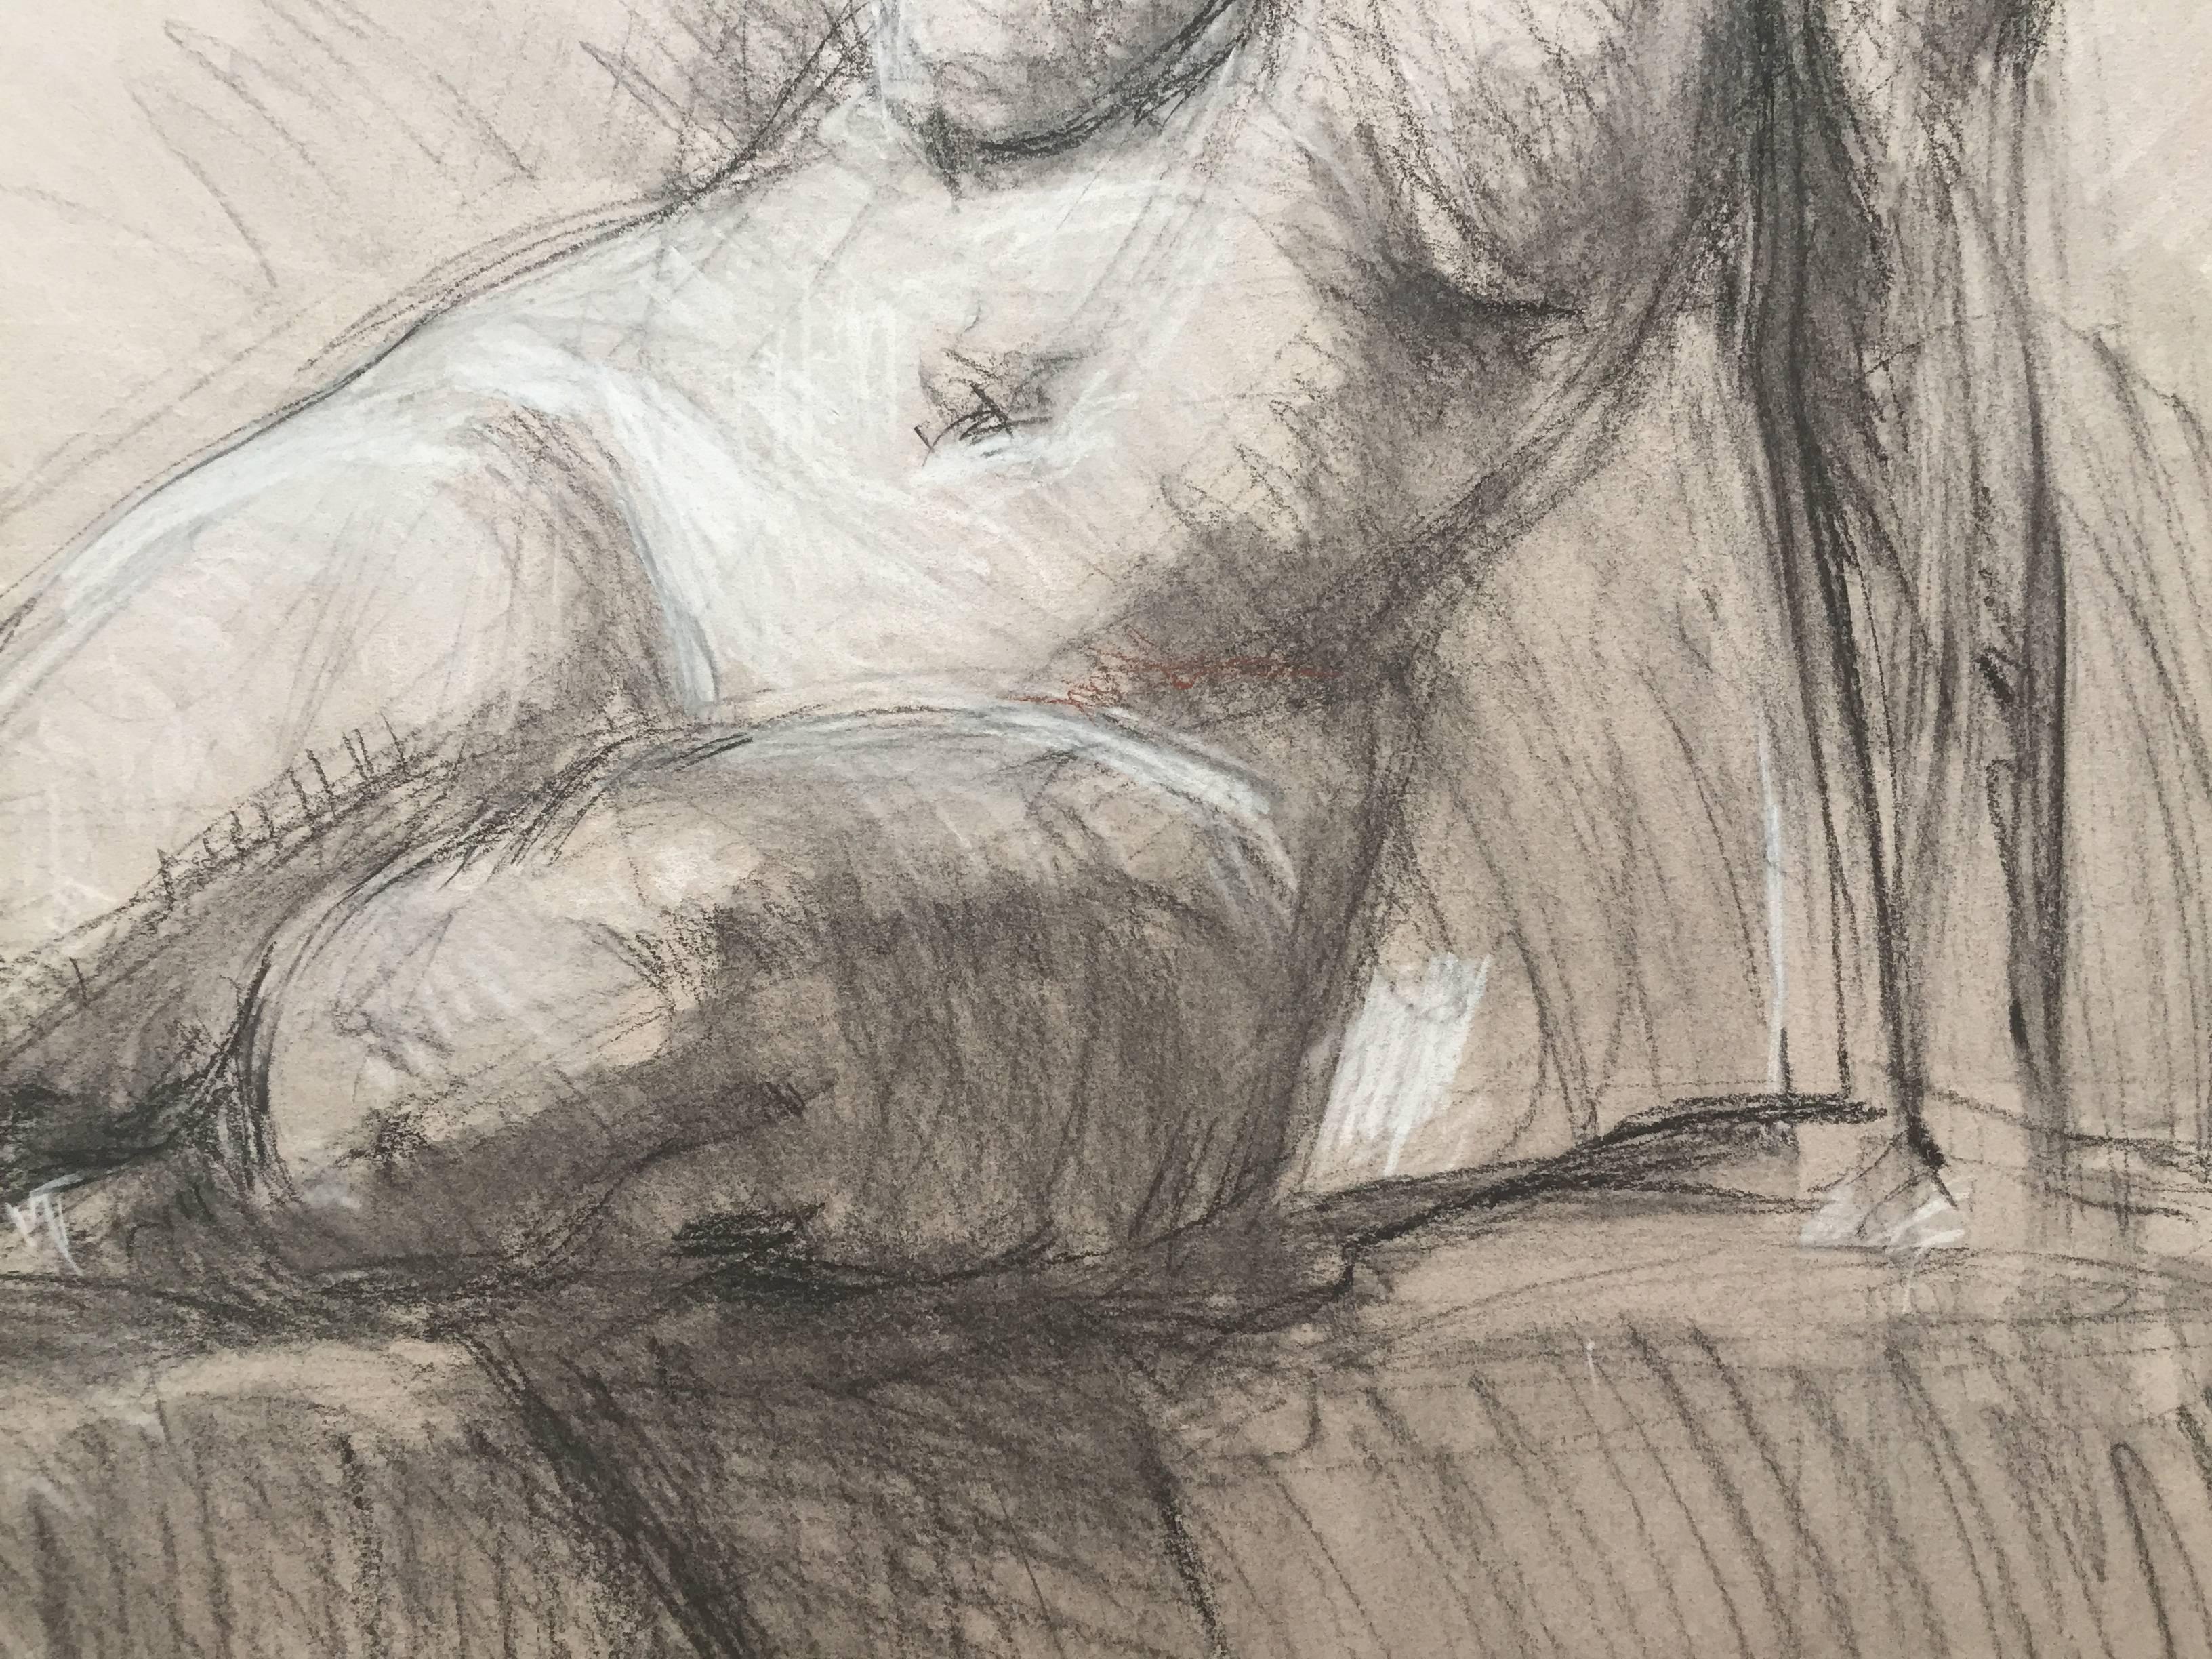 Un dessin académique d'une figure féminine nue assise sur une surface plane. Il souligne le corps avec de la craie blanche. Elle s'appuie sur un bras et l'autre repose derrière son torse.

Biographie de l'artiste
Ben Fenske (né en 1978), bien que